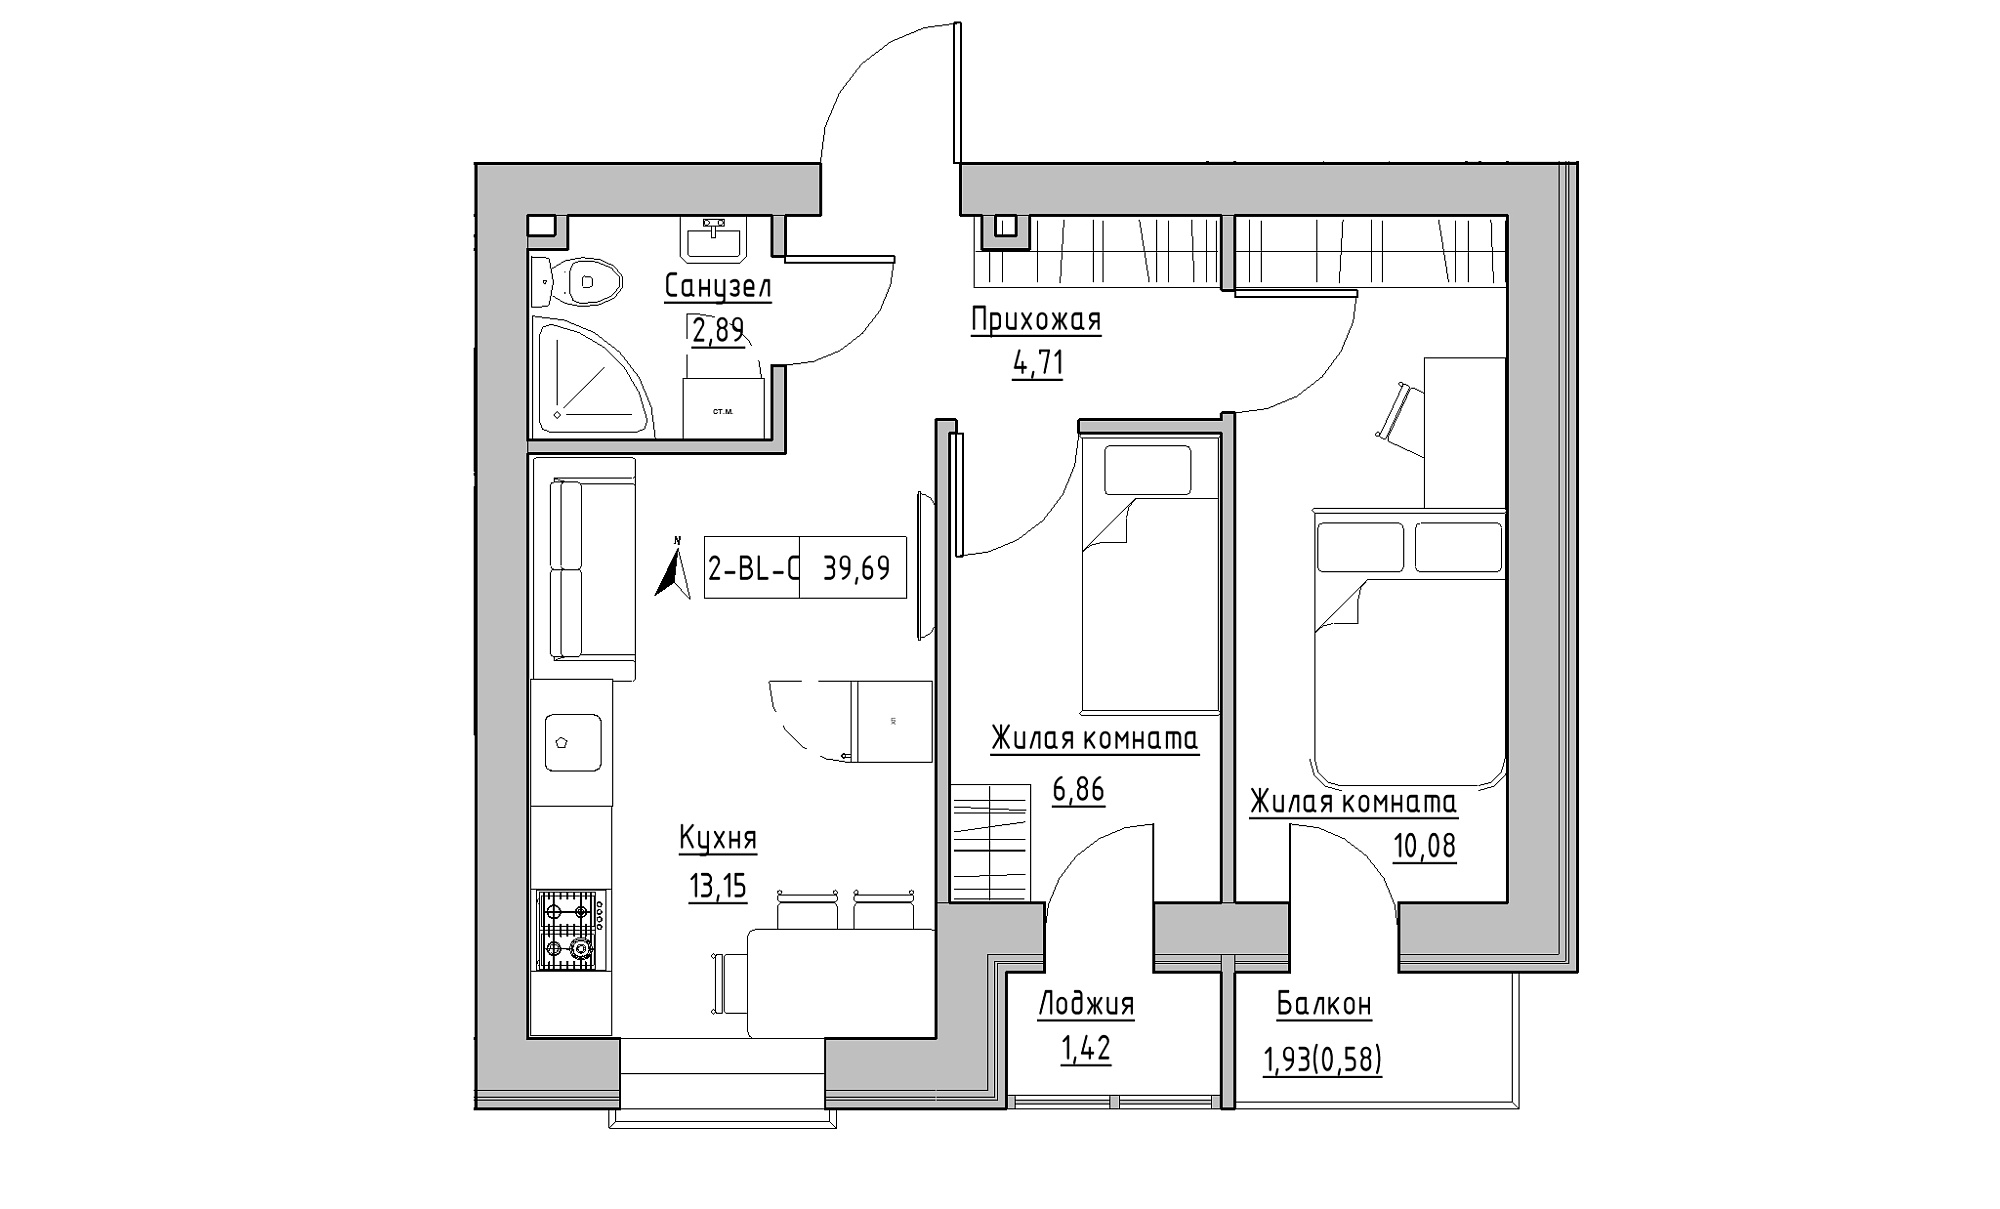 Планировка 2-к квартира площей 39.69м2, KS-016-02/0005.